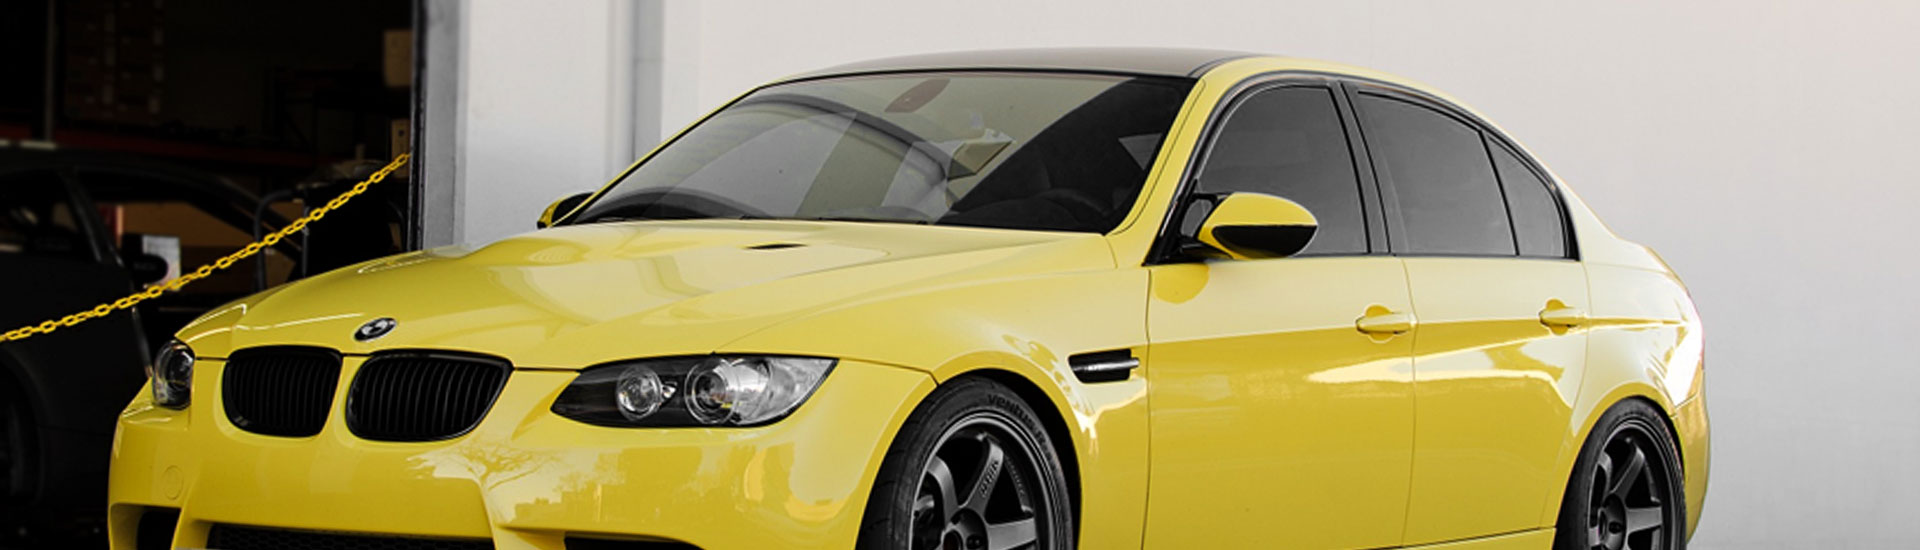 2011 BMW X5 Window Tint